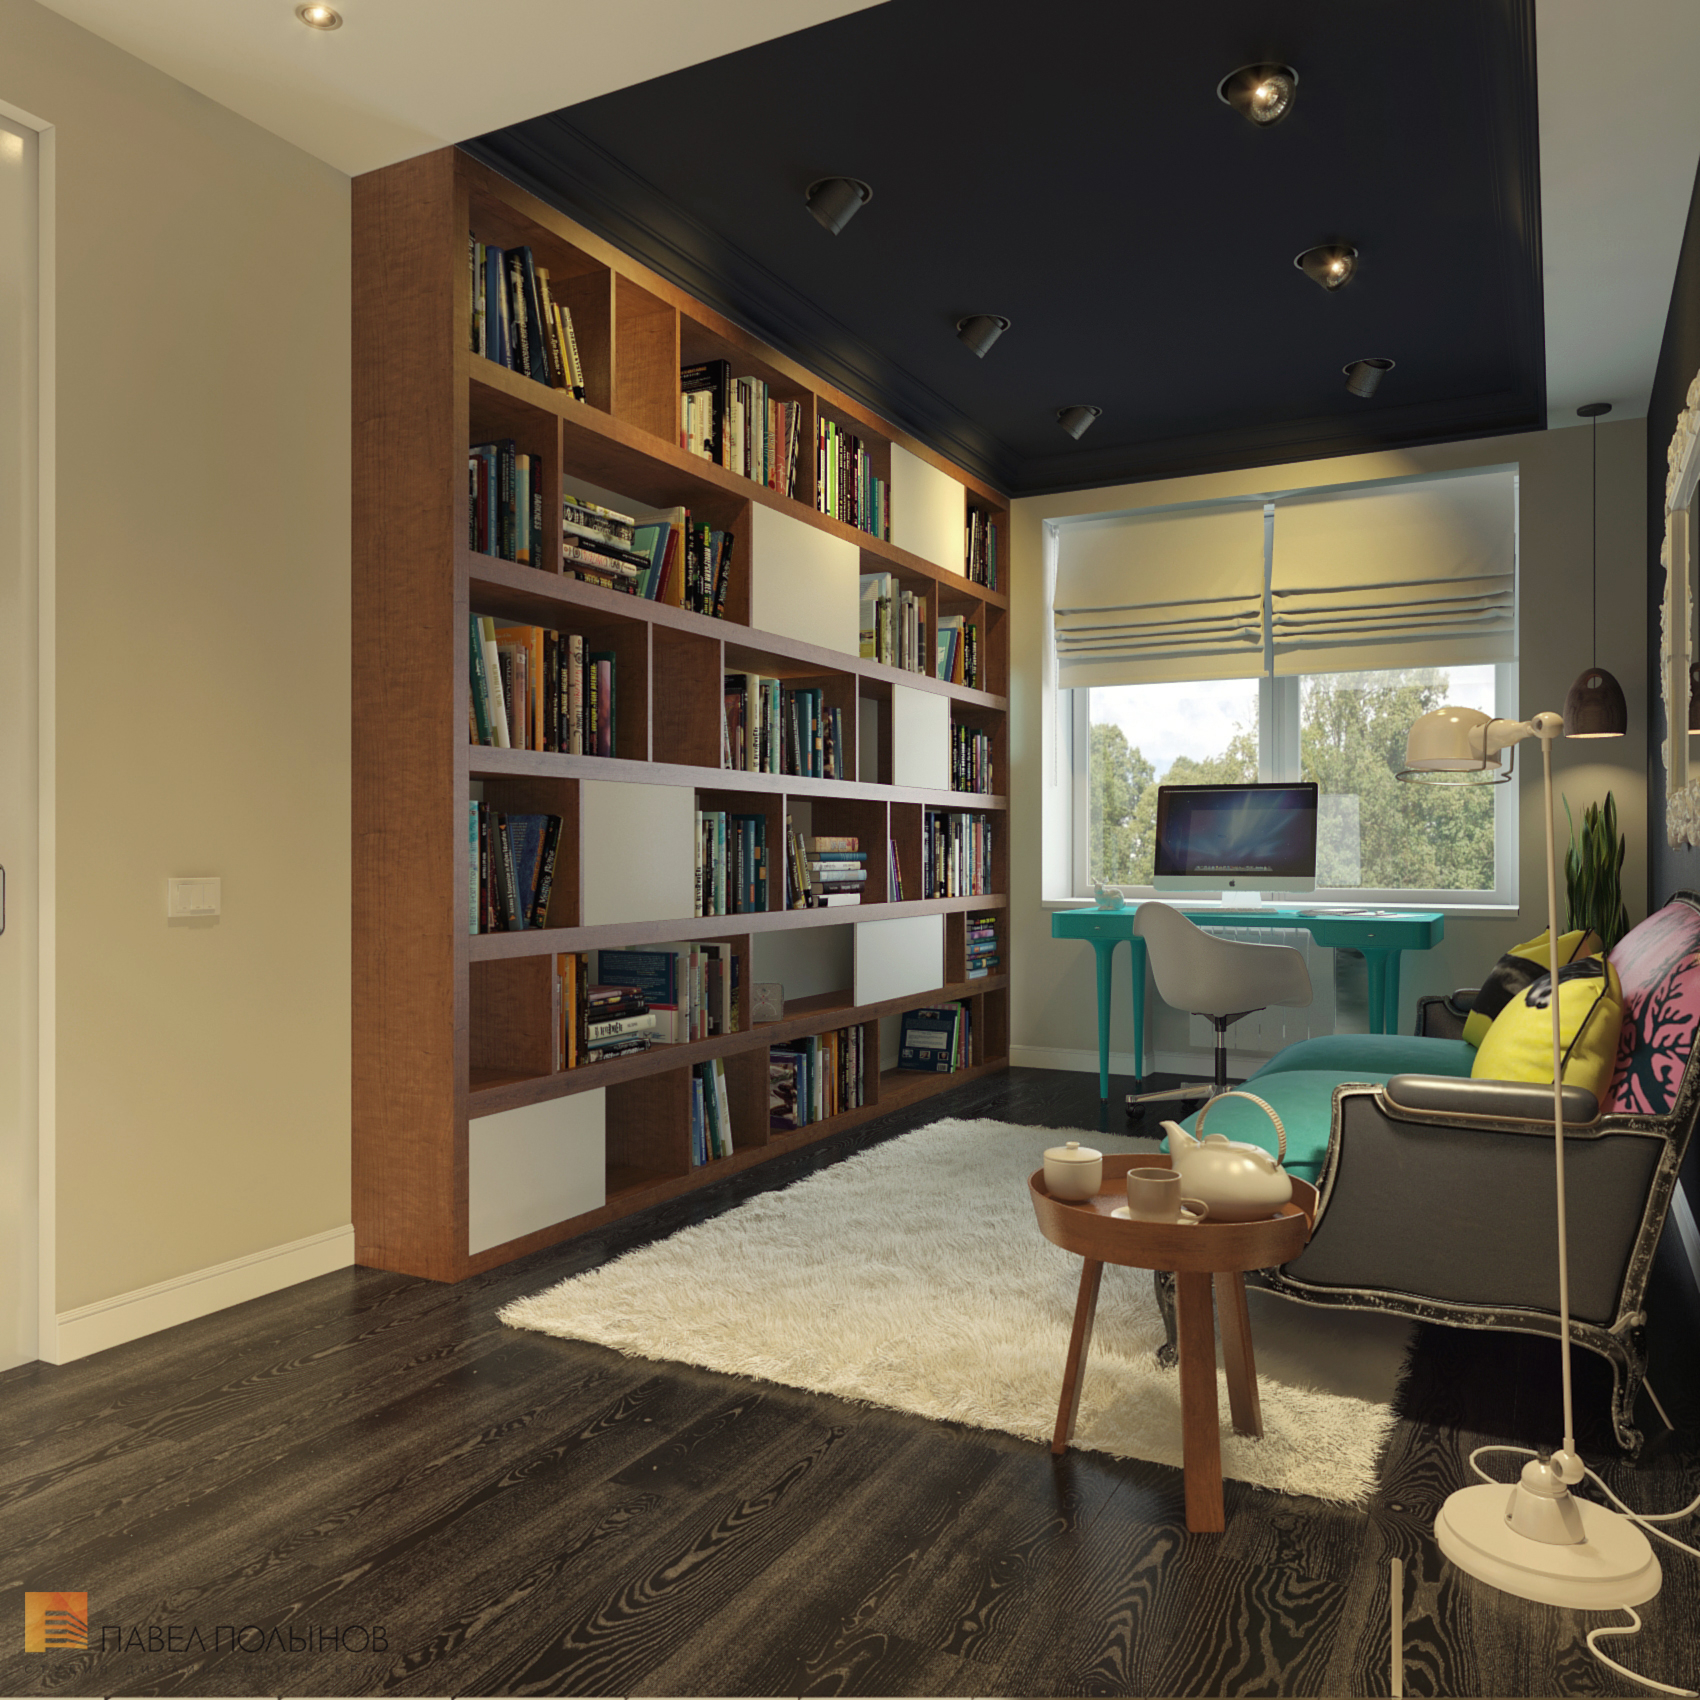 Фото дизайн кабинета из проекта «Дизайн интерьера квартиры в ЖК «Ижора Парк»»